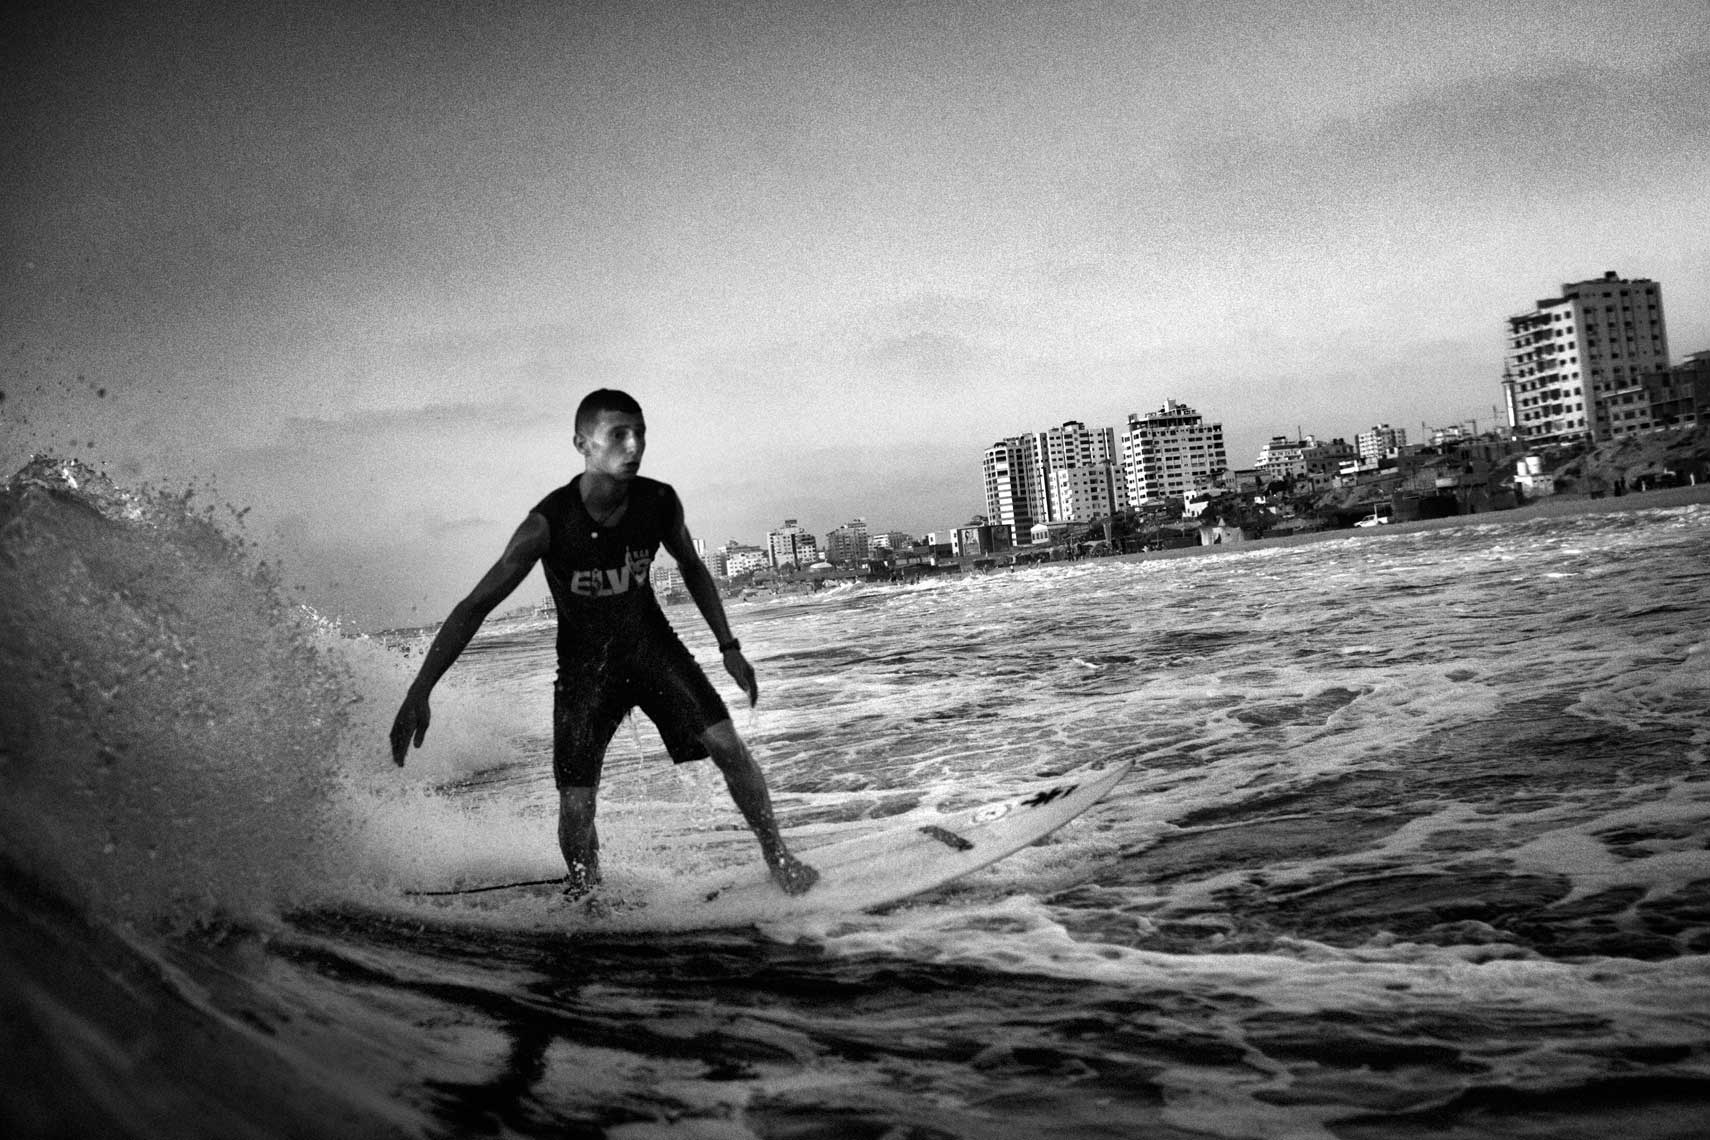 Gaza Surfing